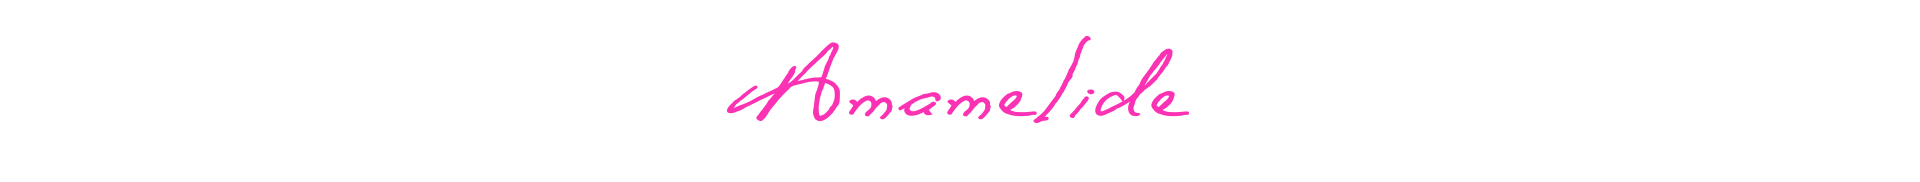 Amamelide - logo 02